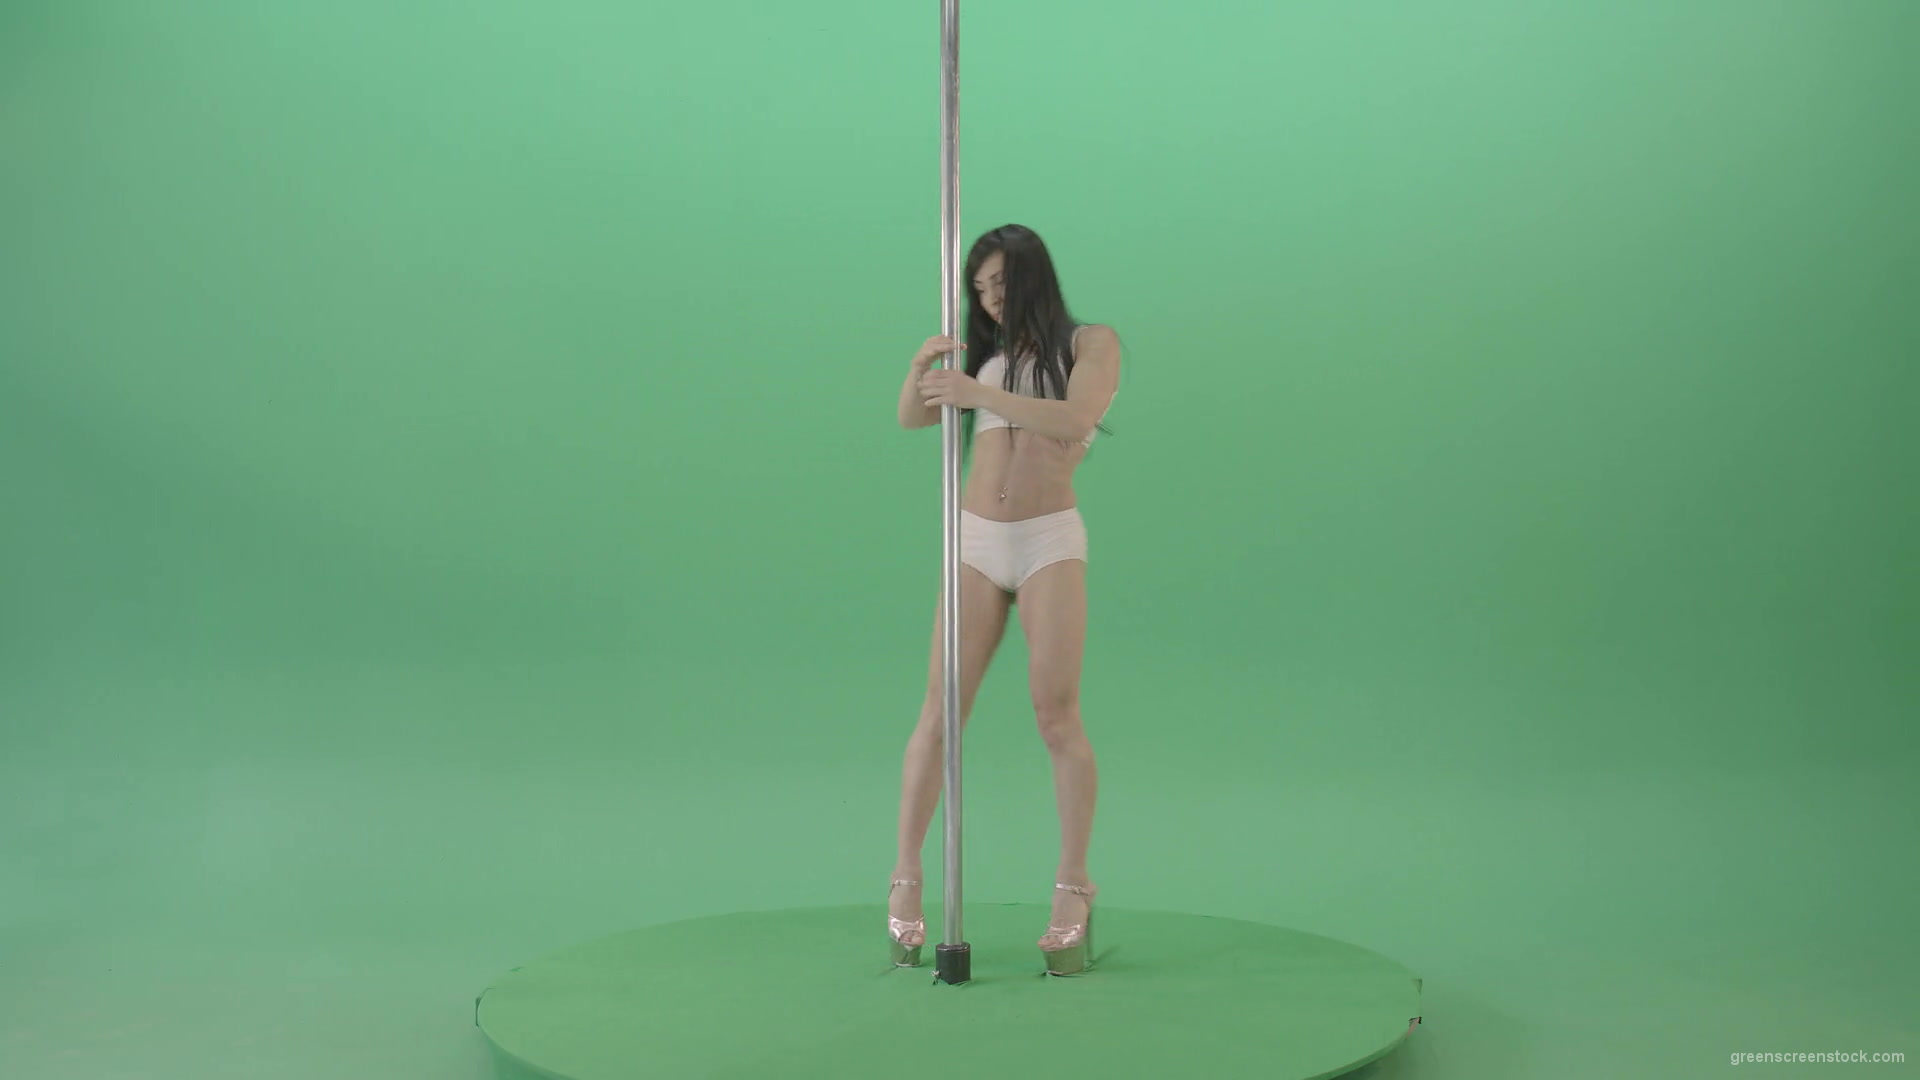 Dancing-GIrl-walking-arround-Pole-in-strip-white-underwear-on-green-screen-4K-Video-Footage-1920_002 Green Screen Stock